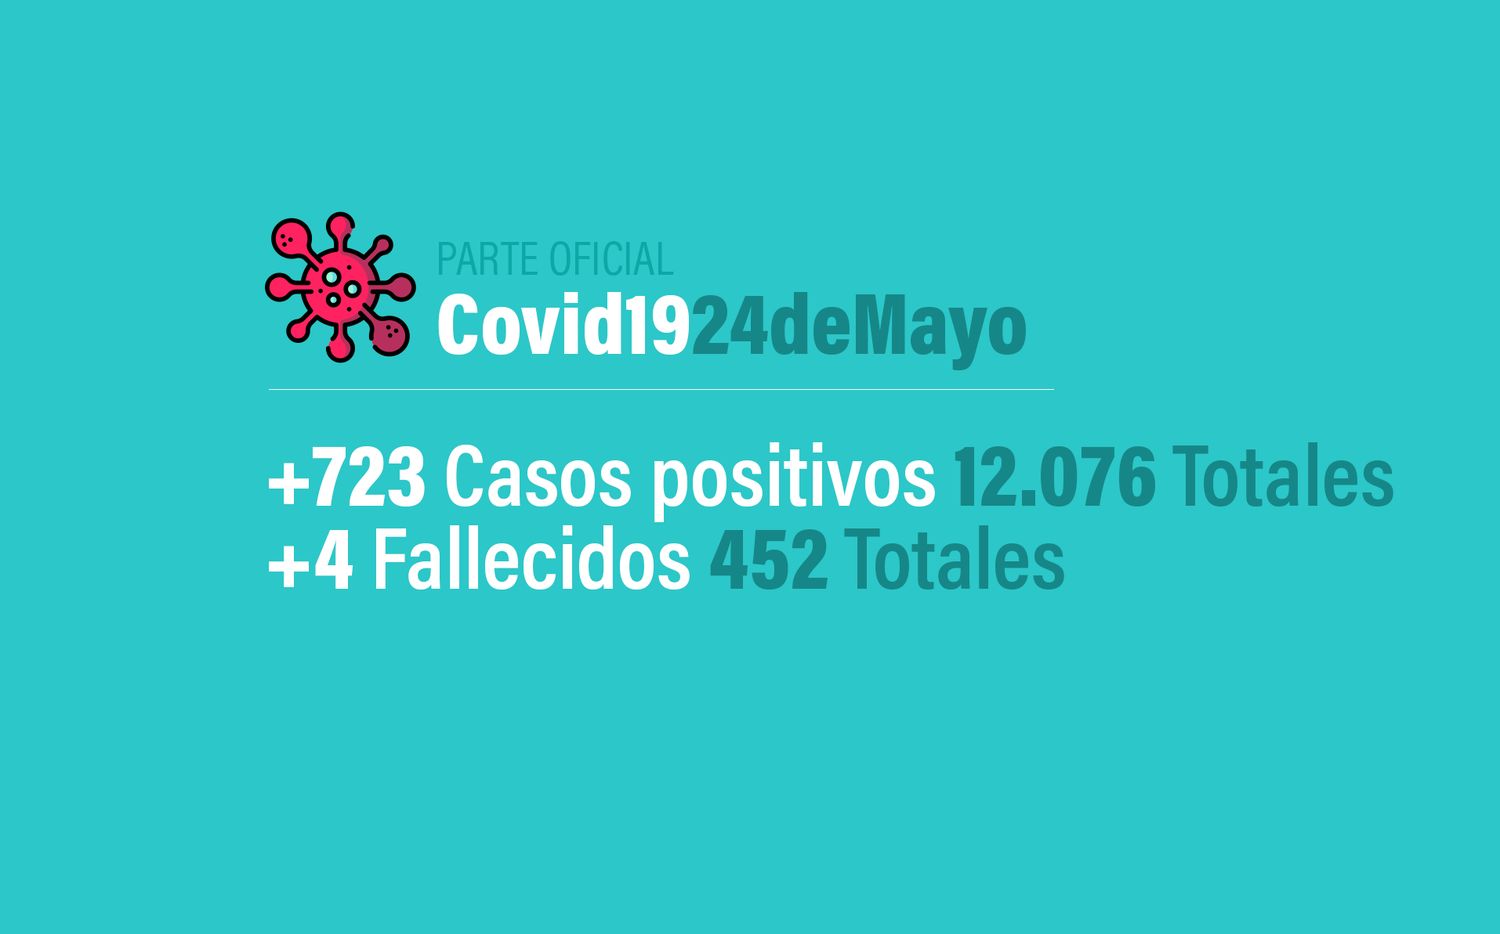 Coronavirus en Argentina: 723 nuevos casos, 12076 confirmados y 452 muertes, al 24 de mayo